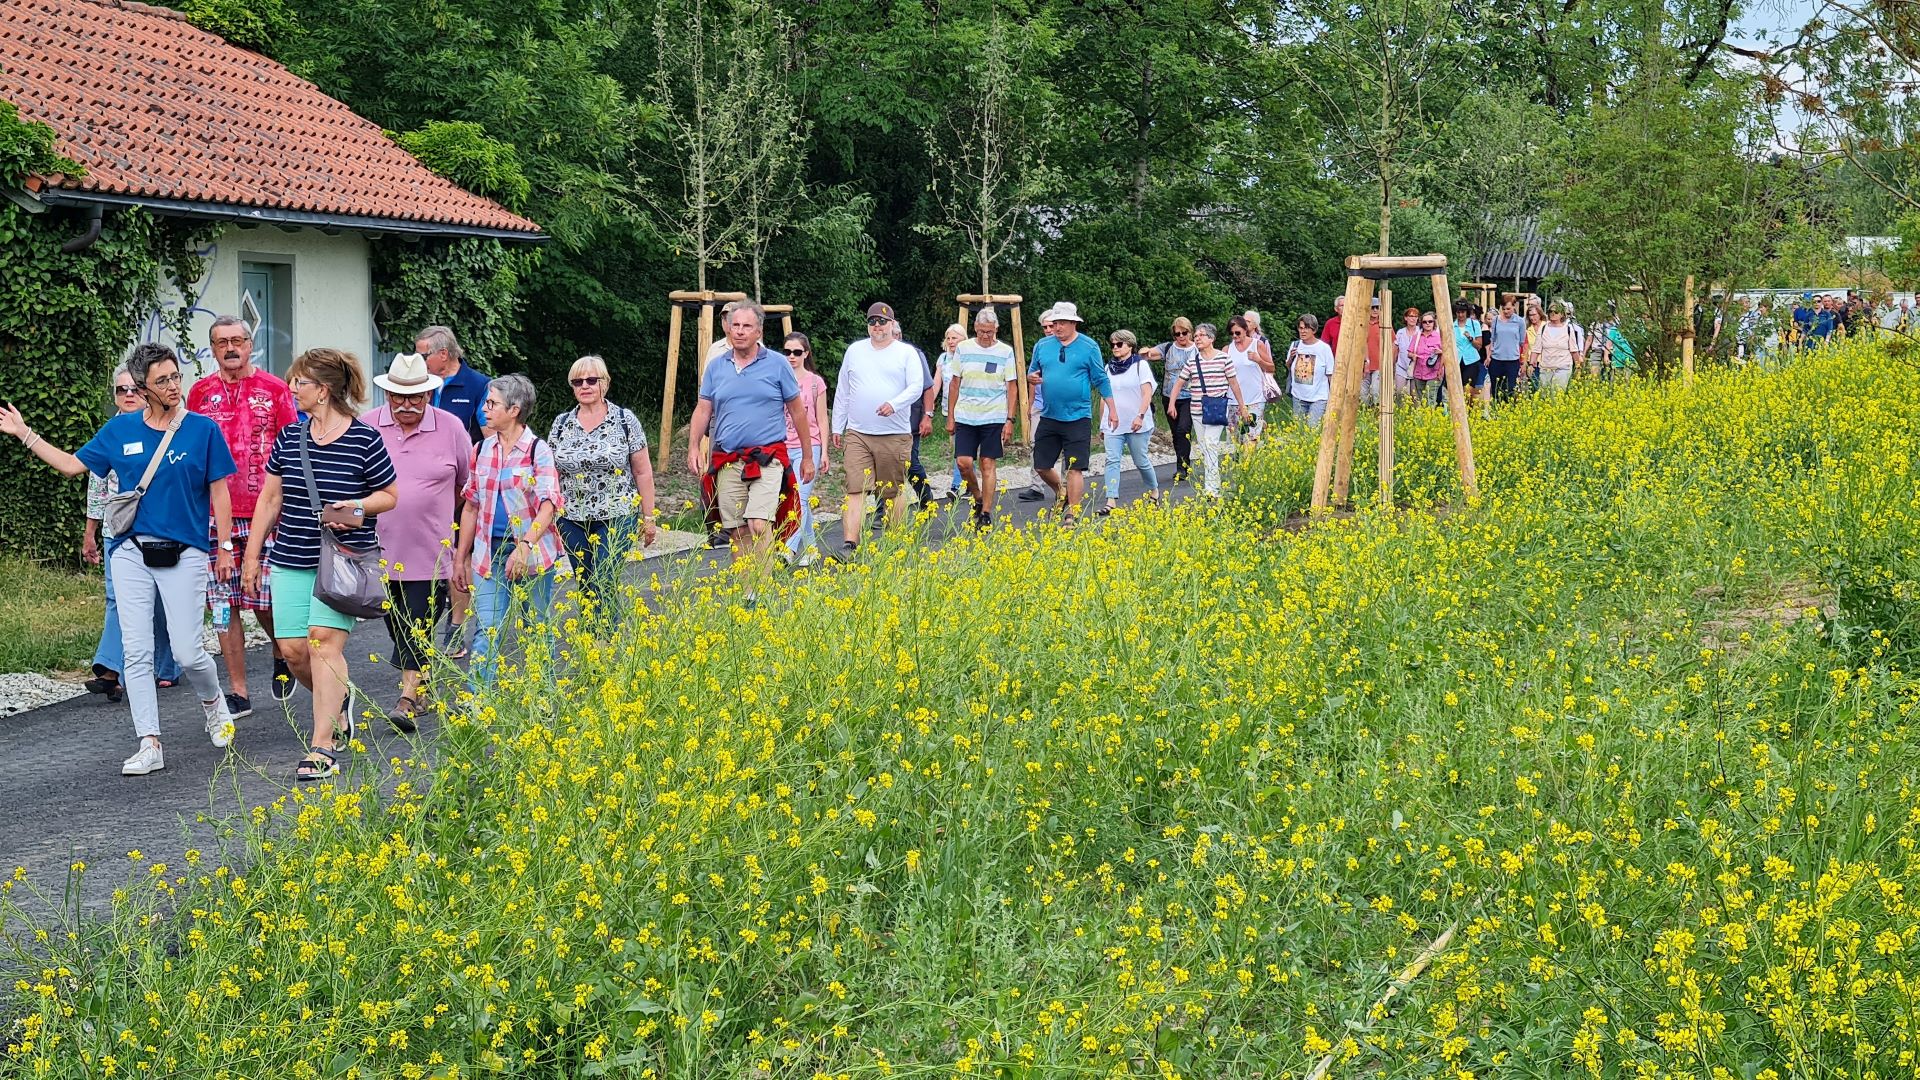 Spezialführung für Ehrenamtliche - im Vordergrund Blumen, im Hintergrund eine spazierende Gruppe